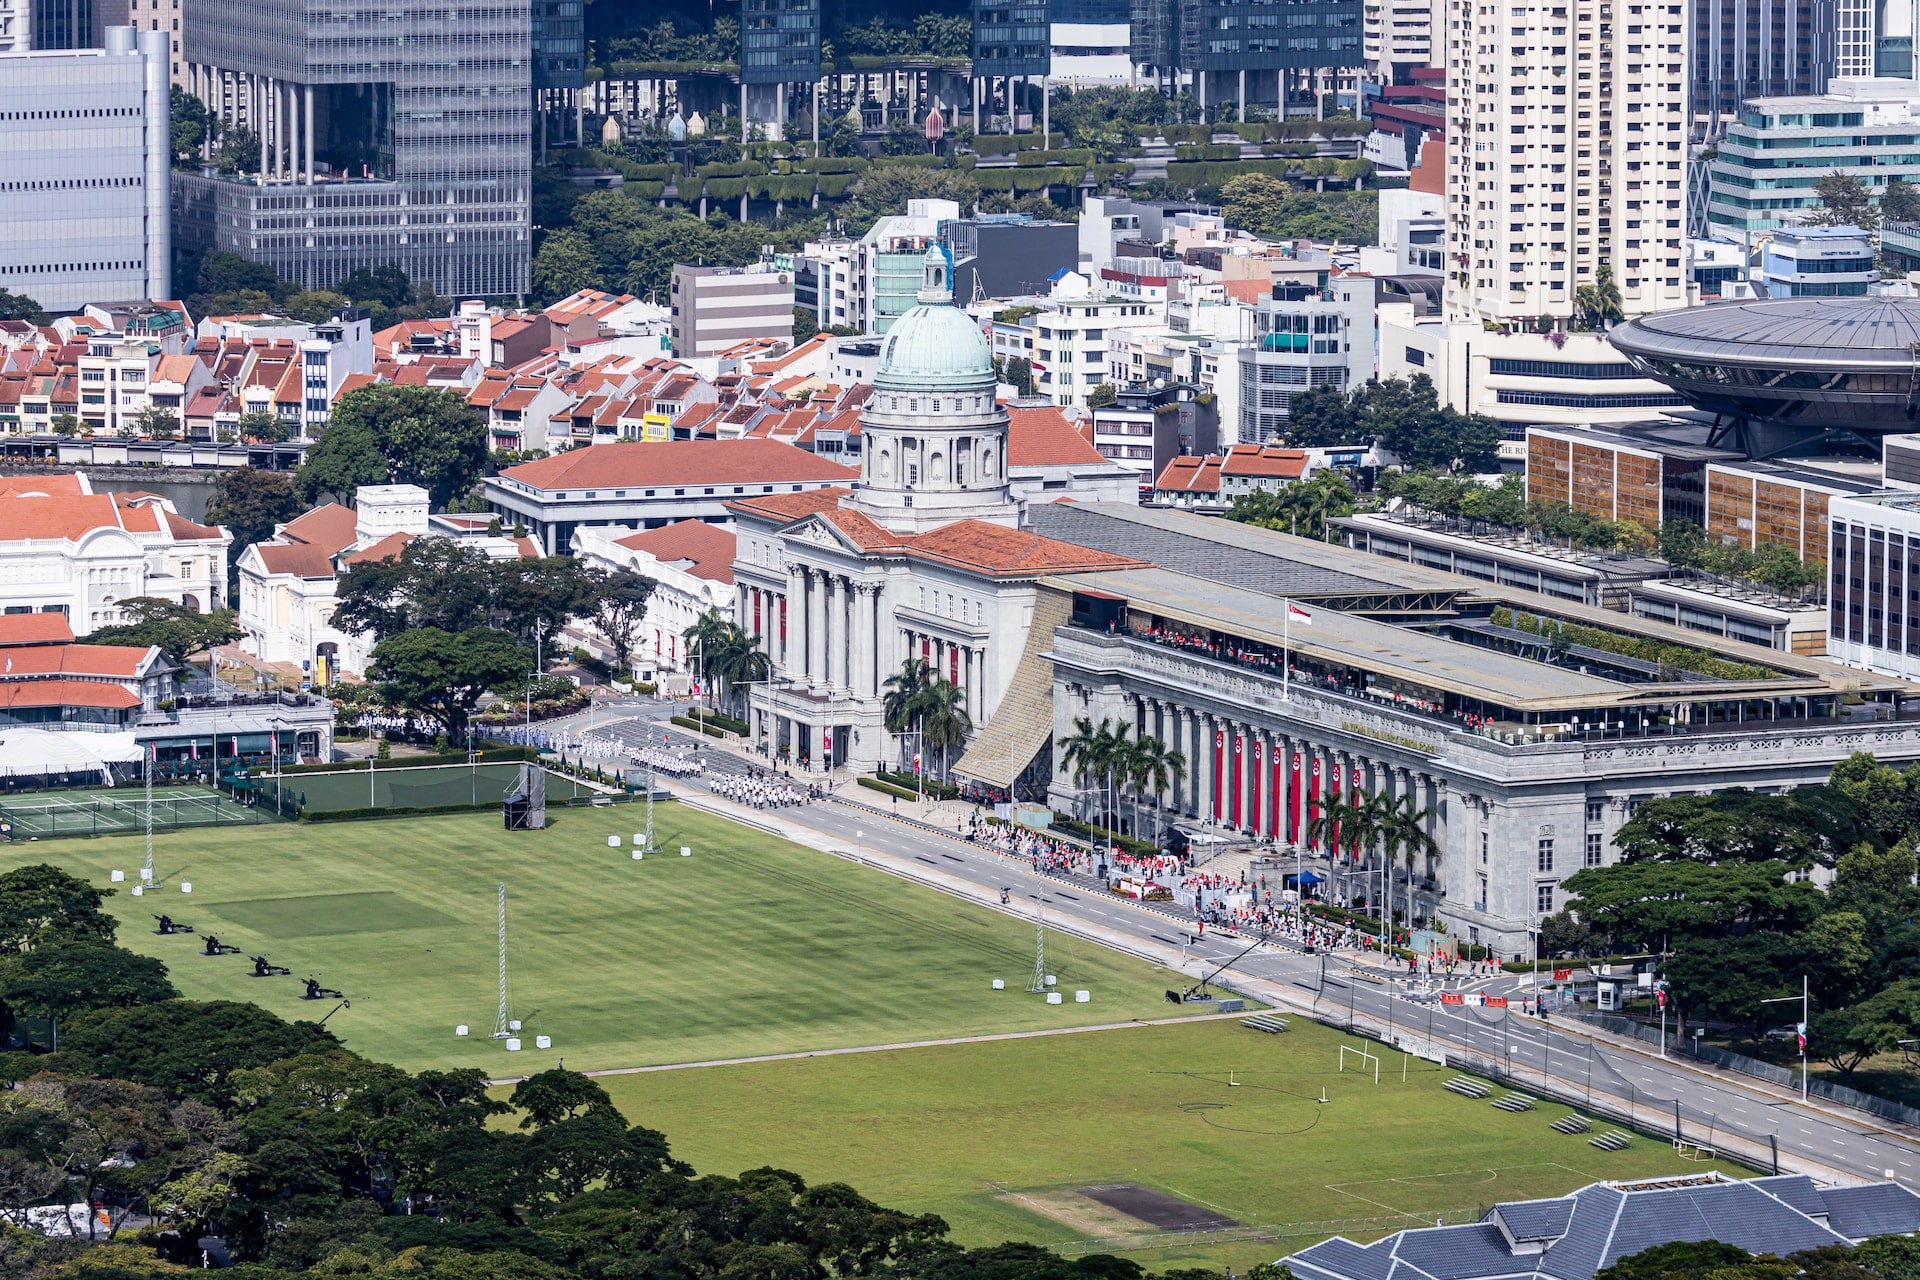 Situato vicino al Central Business District della città, il City Hall è una zona storicamente significativa e centrale per trovare alloggio a Singapore.